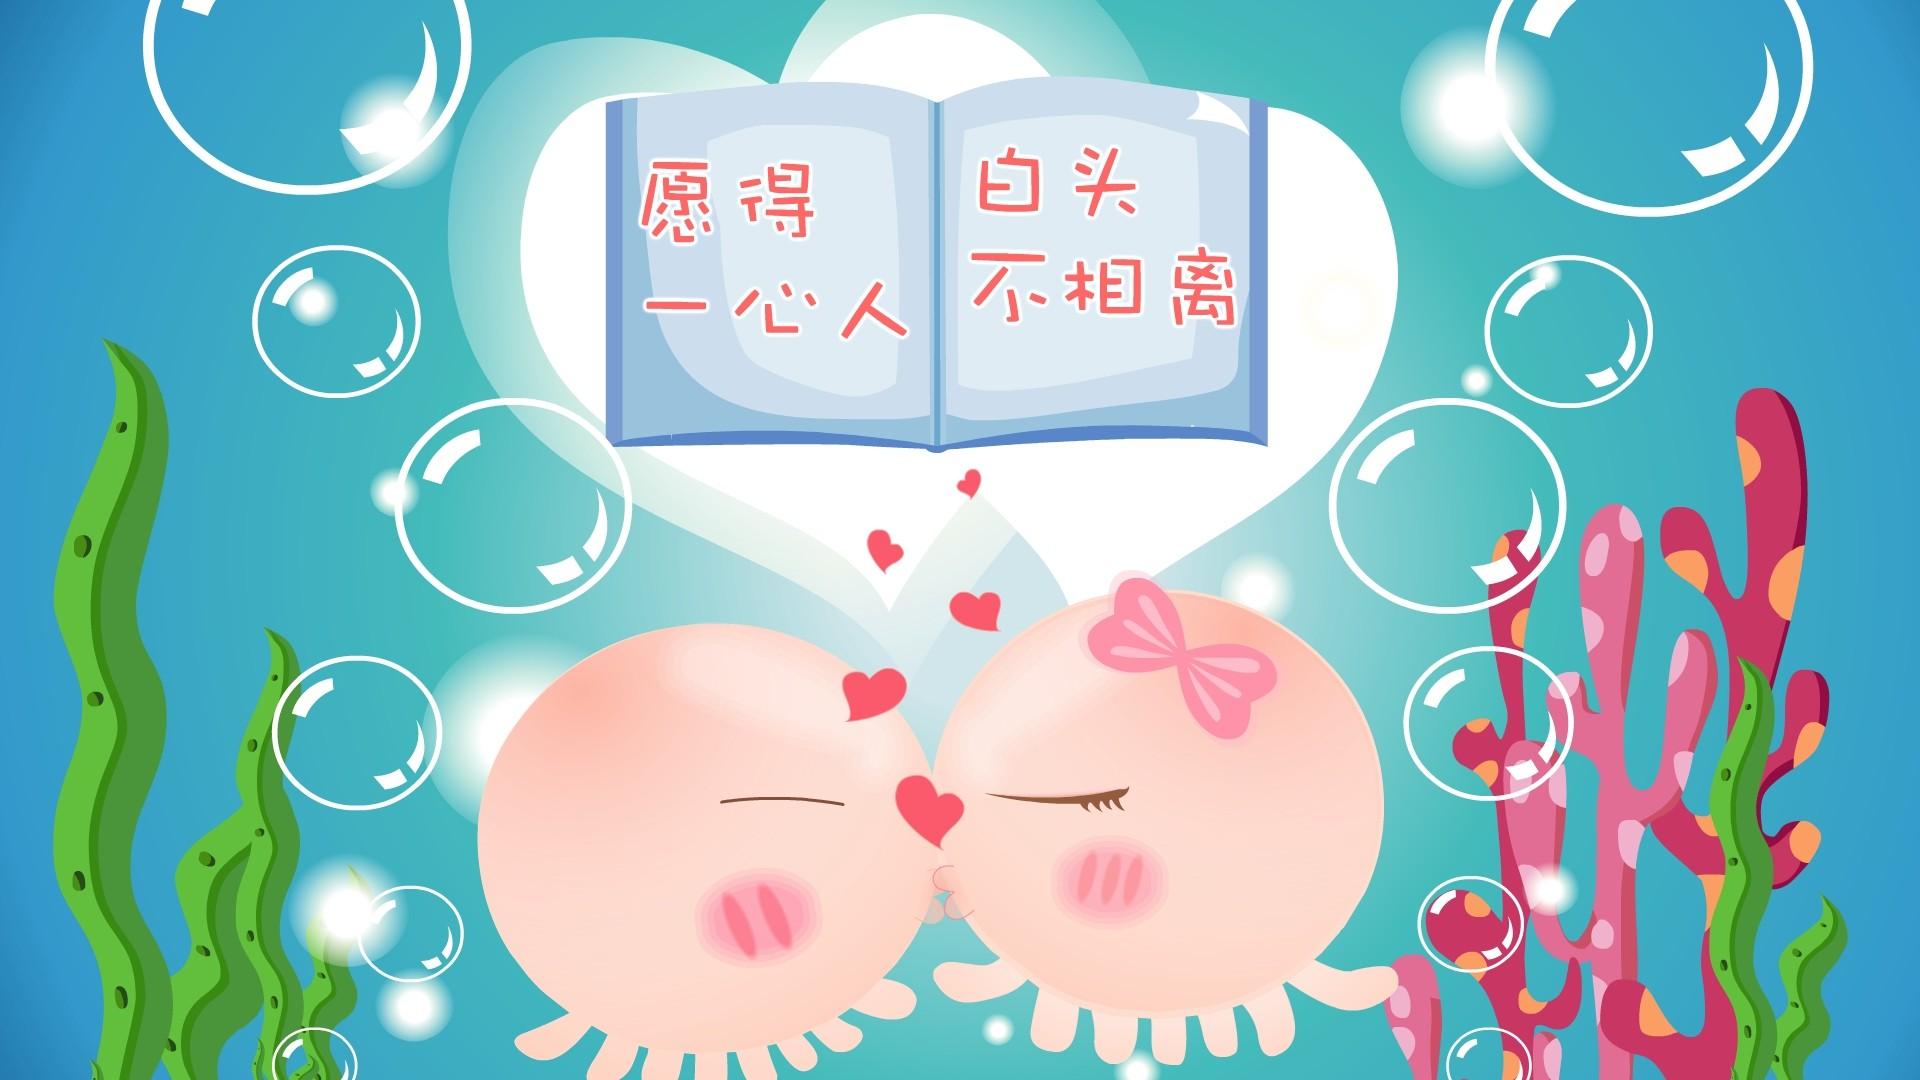 甜蜜情侣个性桌面壁纸-壁纸下载-www.pp3.cn